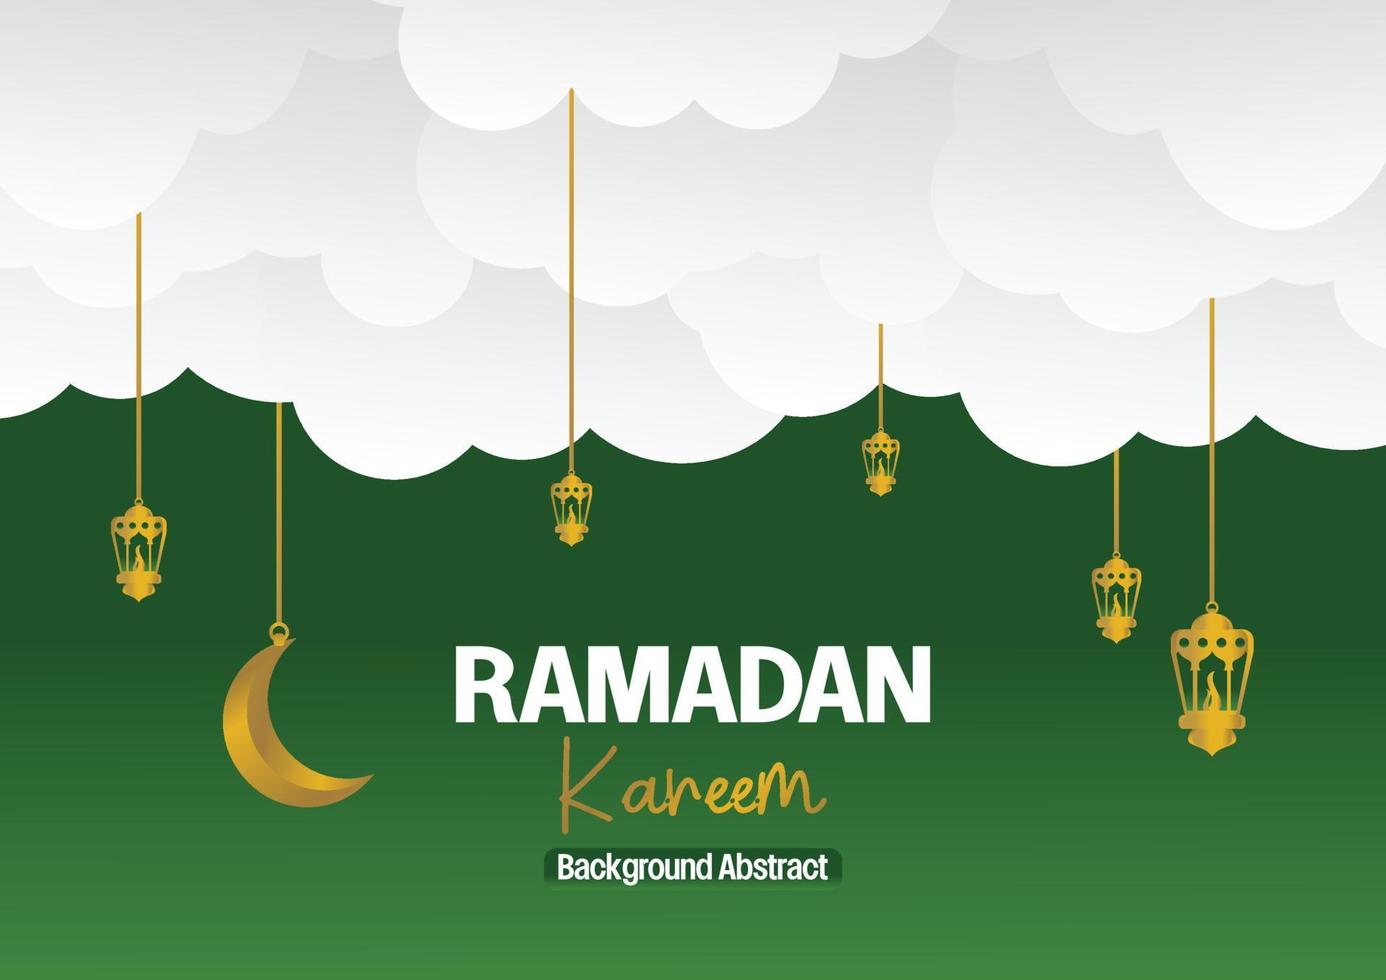 Ramadan kareem groet banier of kaart ontwerp met 3d papier besnoeiing ornament van Islamitisch lantaarn, maan in gouden kleur. vector illustratie. plaats voor tekst